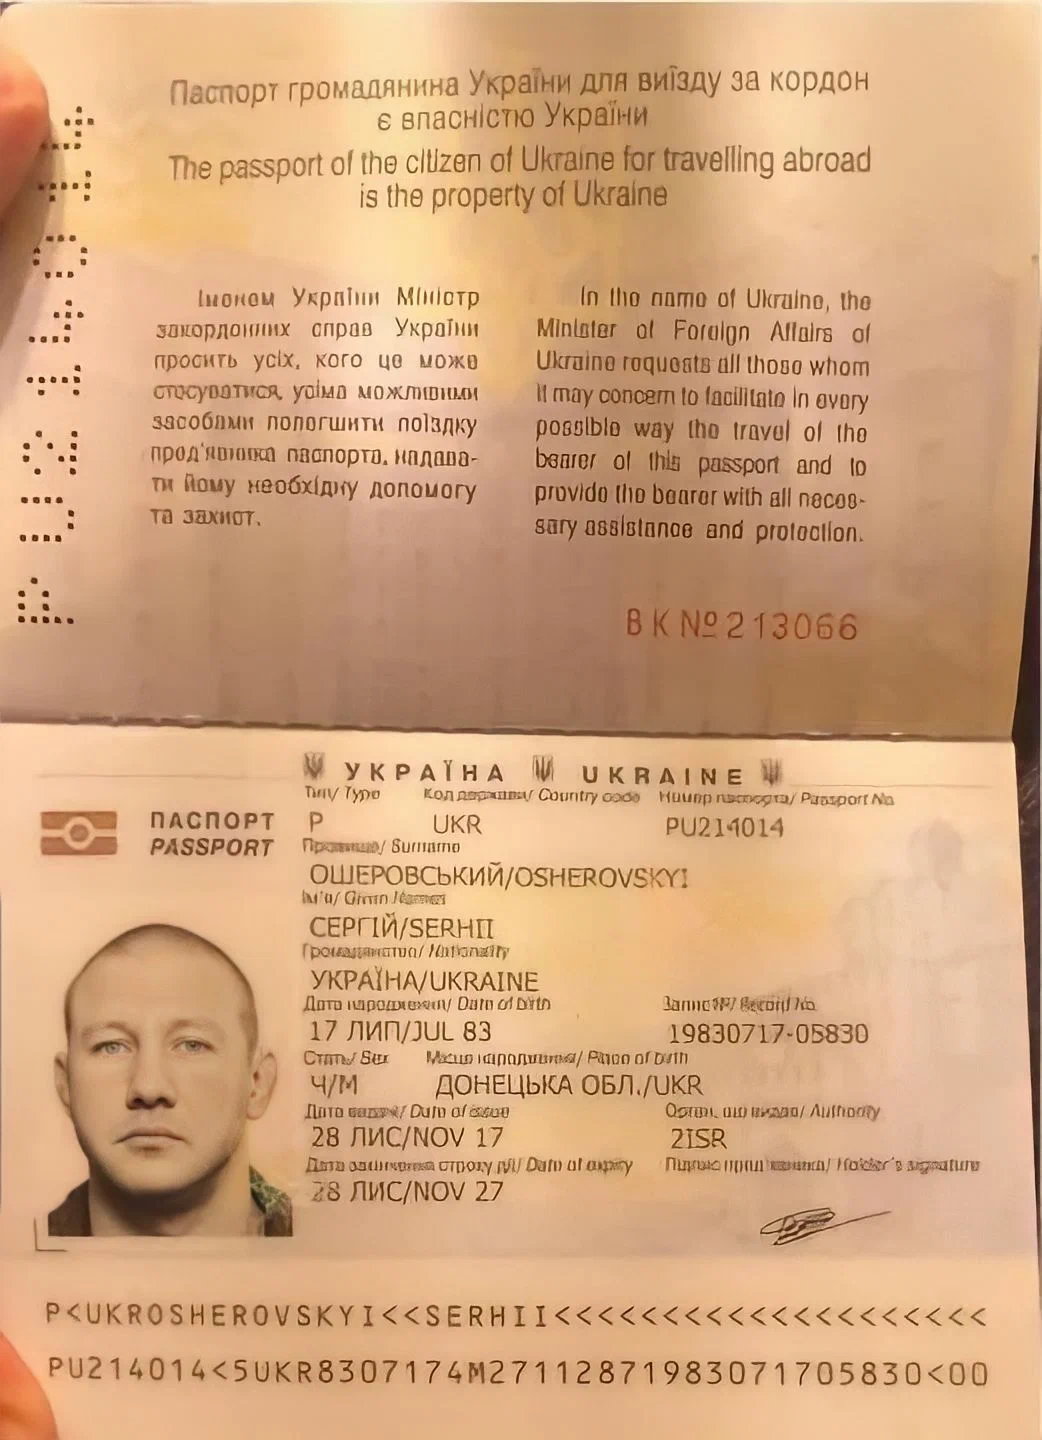 Сергей Леонидович Ошеровский паспорт Украина-1